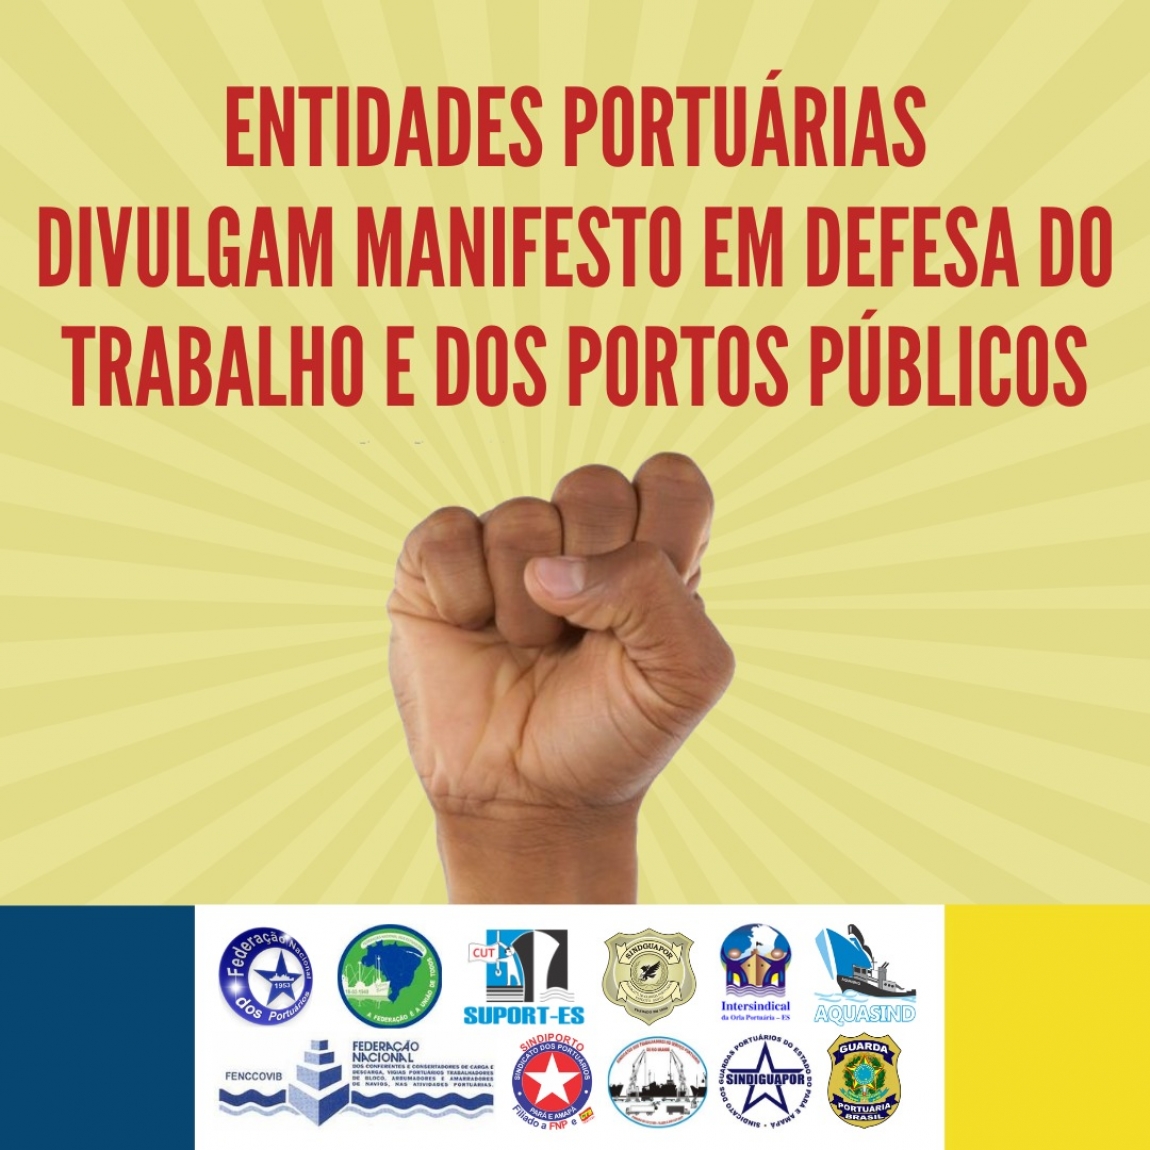 Imagem de Entidades dos trabalhadores portuários divulgam Manifesto em defesa dos empregos e contra privatização dos portos públicos